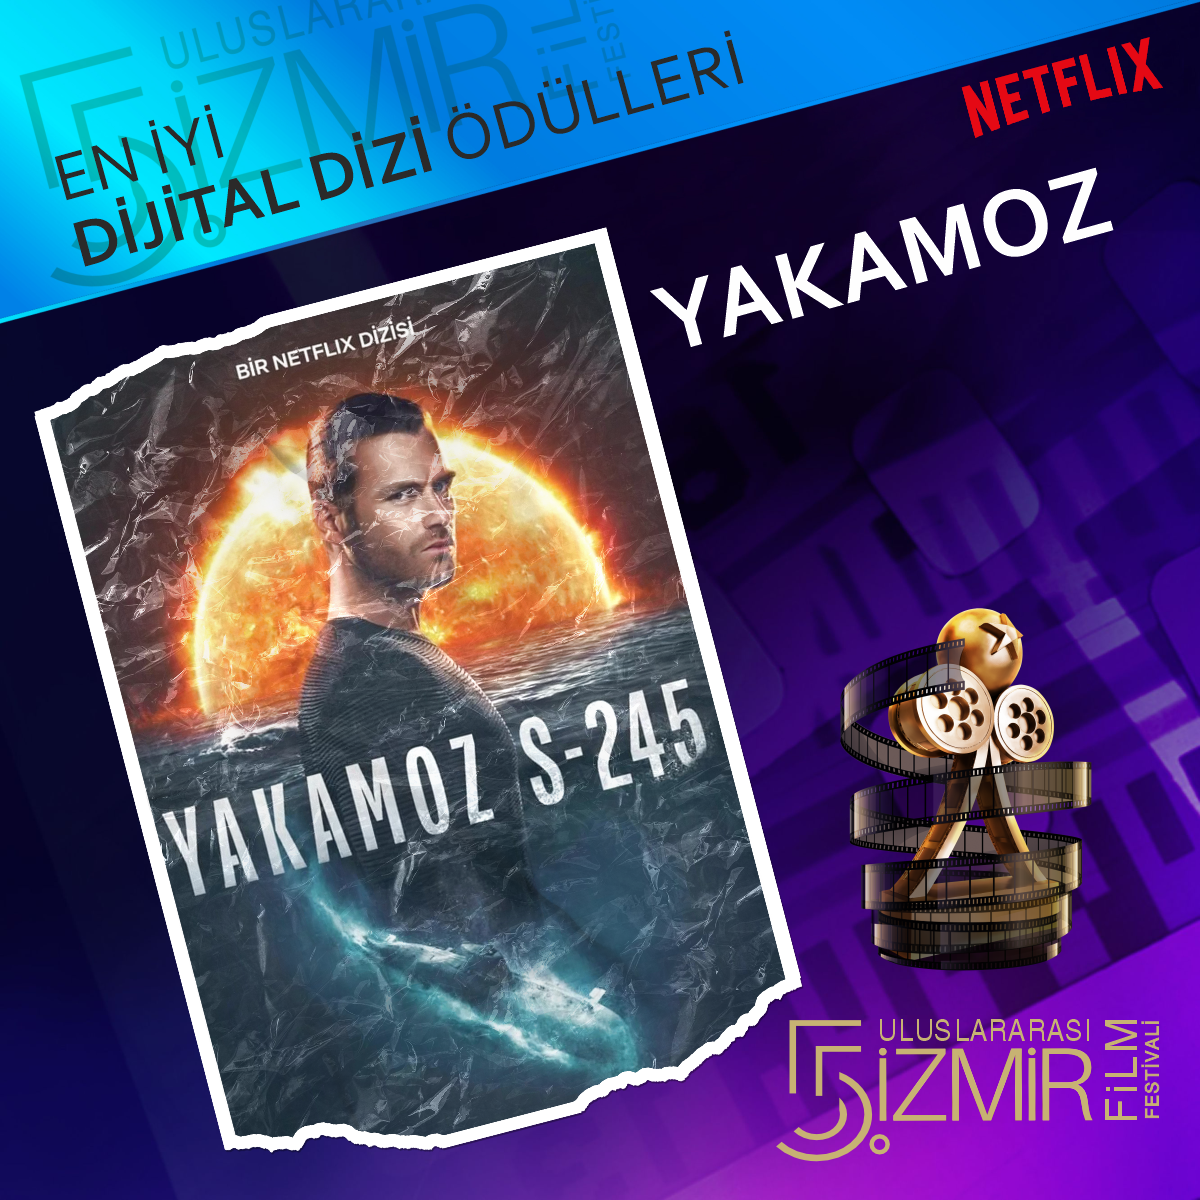 Yakamoz S-245